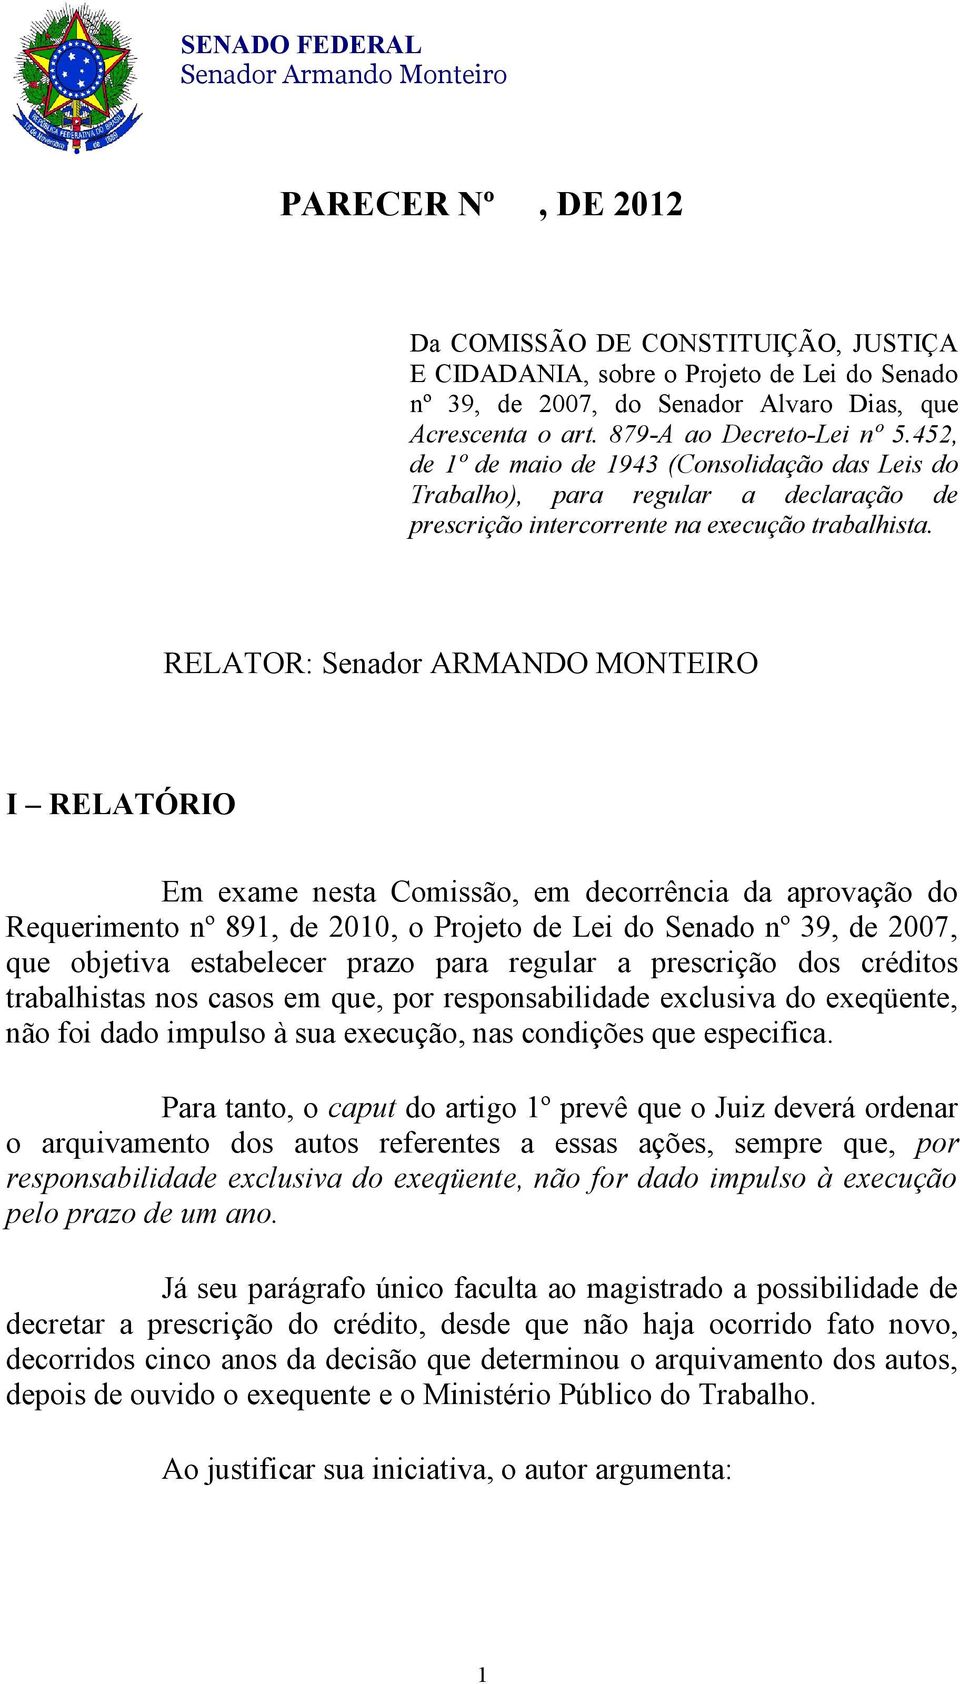 RELATOR: Senador ARMANDO MONTEIRO I RELATÓRIO Em exame nesta Comissão, em decorrência da aprovação do Requerimento nº 891, de 2010, o Projeto de Lei do Senado nº 39, de 2007, que objetiva estabelecer